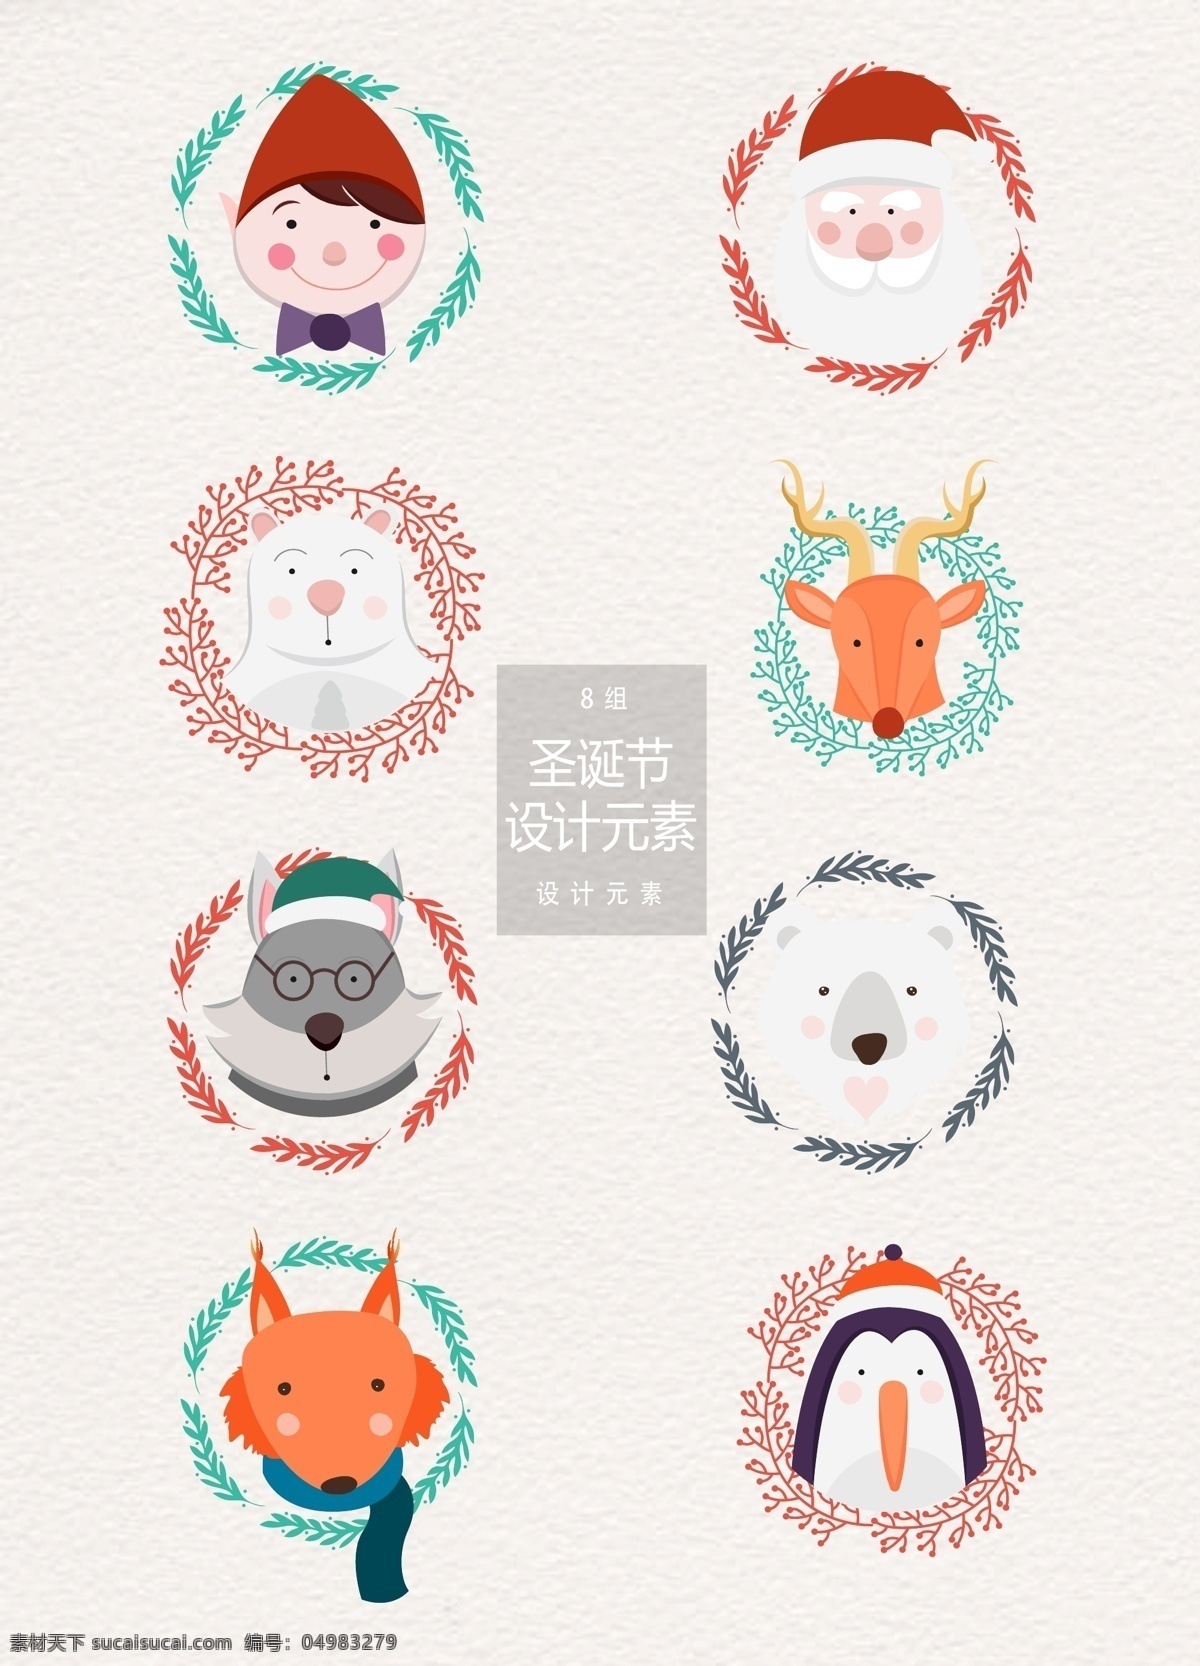 可爱 圣诞节 元素 卡通 圣诞老人 动物 圣诞节元素 圣诞 精灵 北极熊 狐狸 企鹅 驯鹿